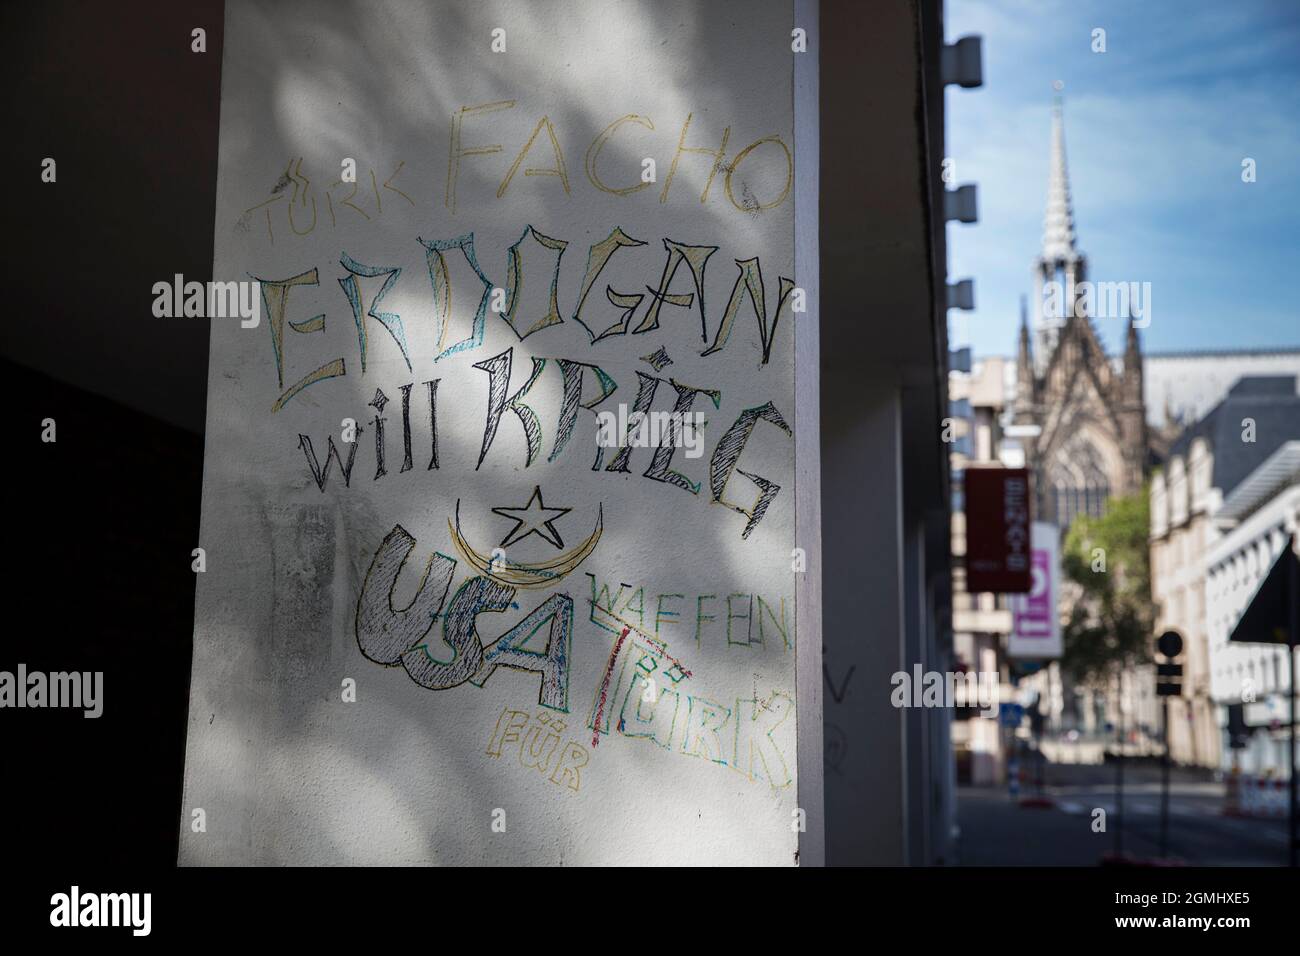 Anti Erdogan graffiti dans la ville près de la cathédrale, Cologne, Allemagne. Traduction: Erdogan veut la guerre anti Erdogan Graffiti in der Innenstadt nahe Banque D'Images